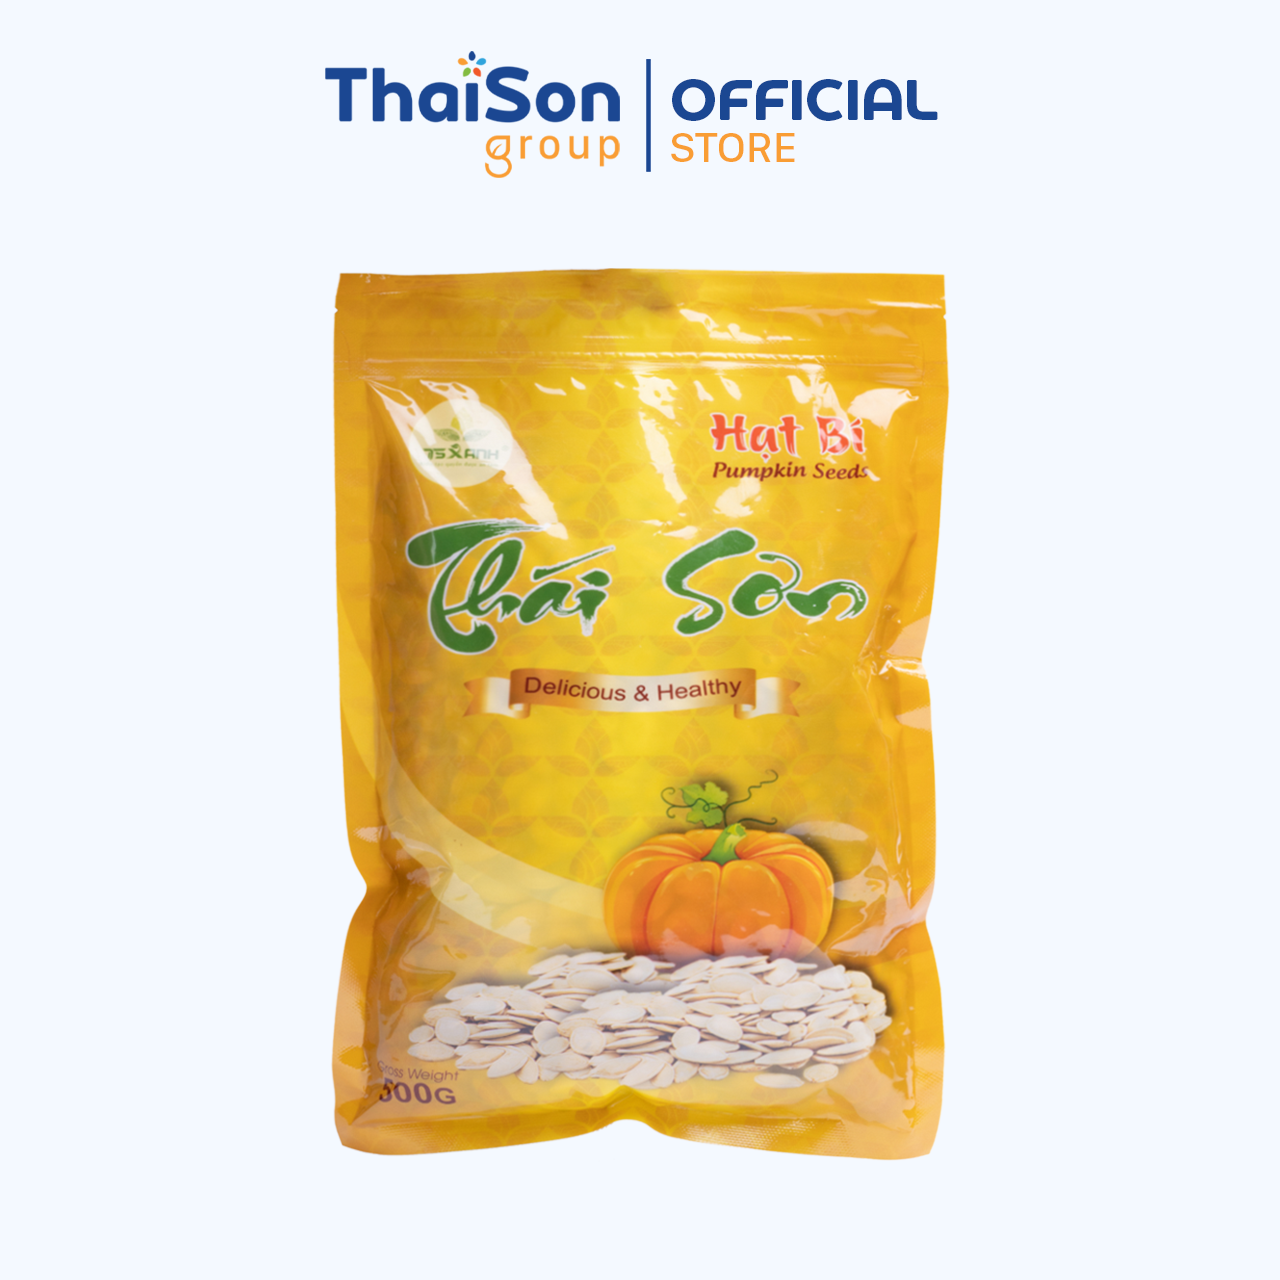 Hạt bí Thái Sơn rang muối bì zipper 500g